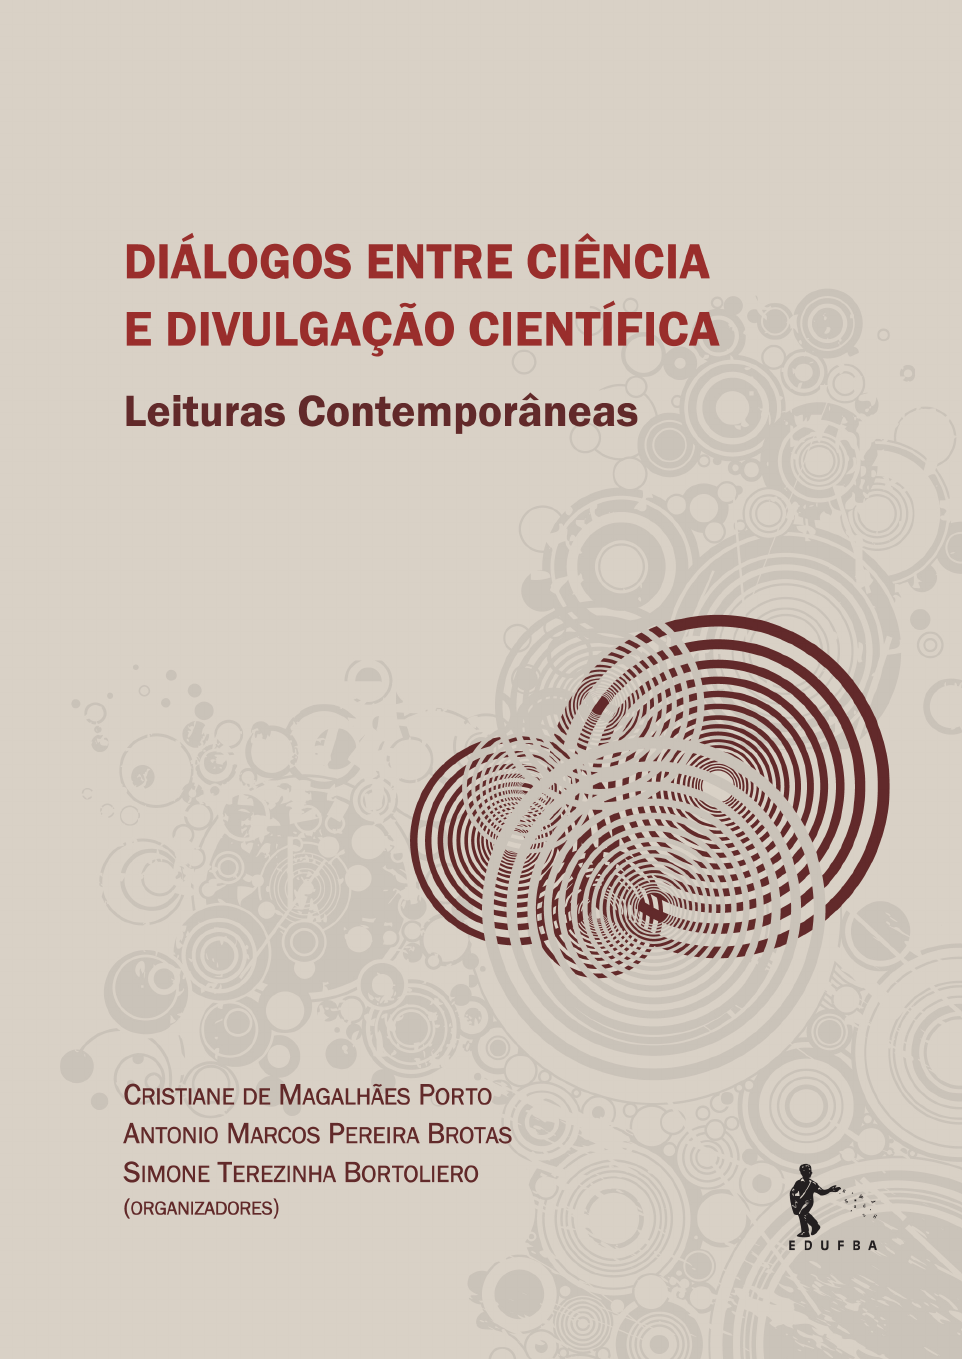 Investigações contemporâneas em Ciências da Saúde: Volume 2 - Editora  Dialética